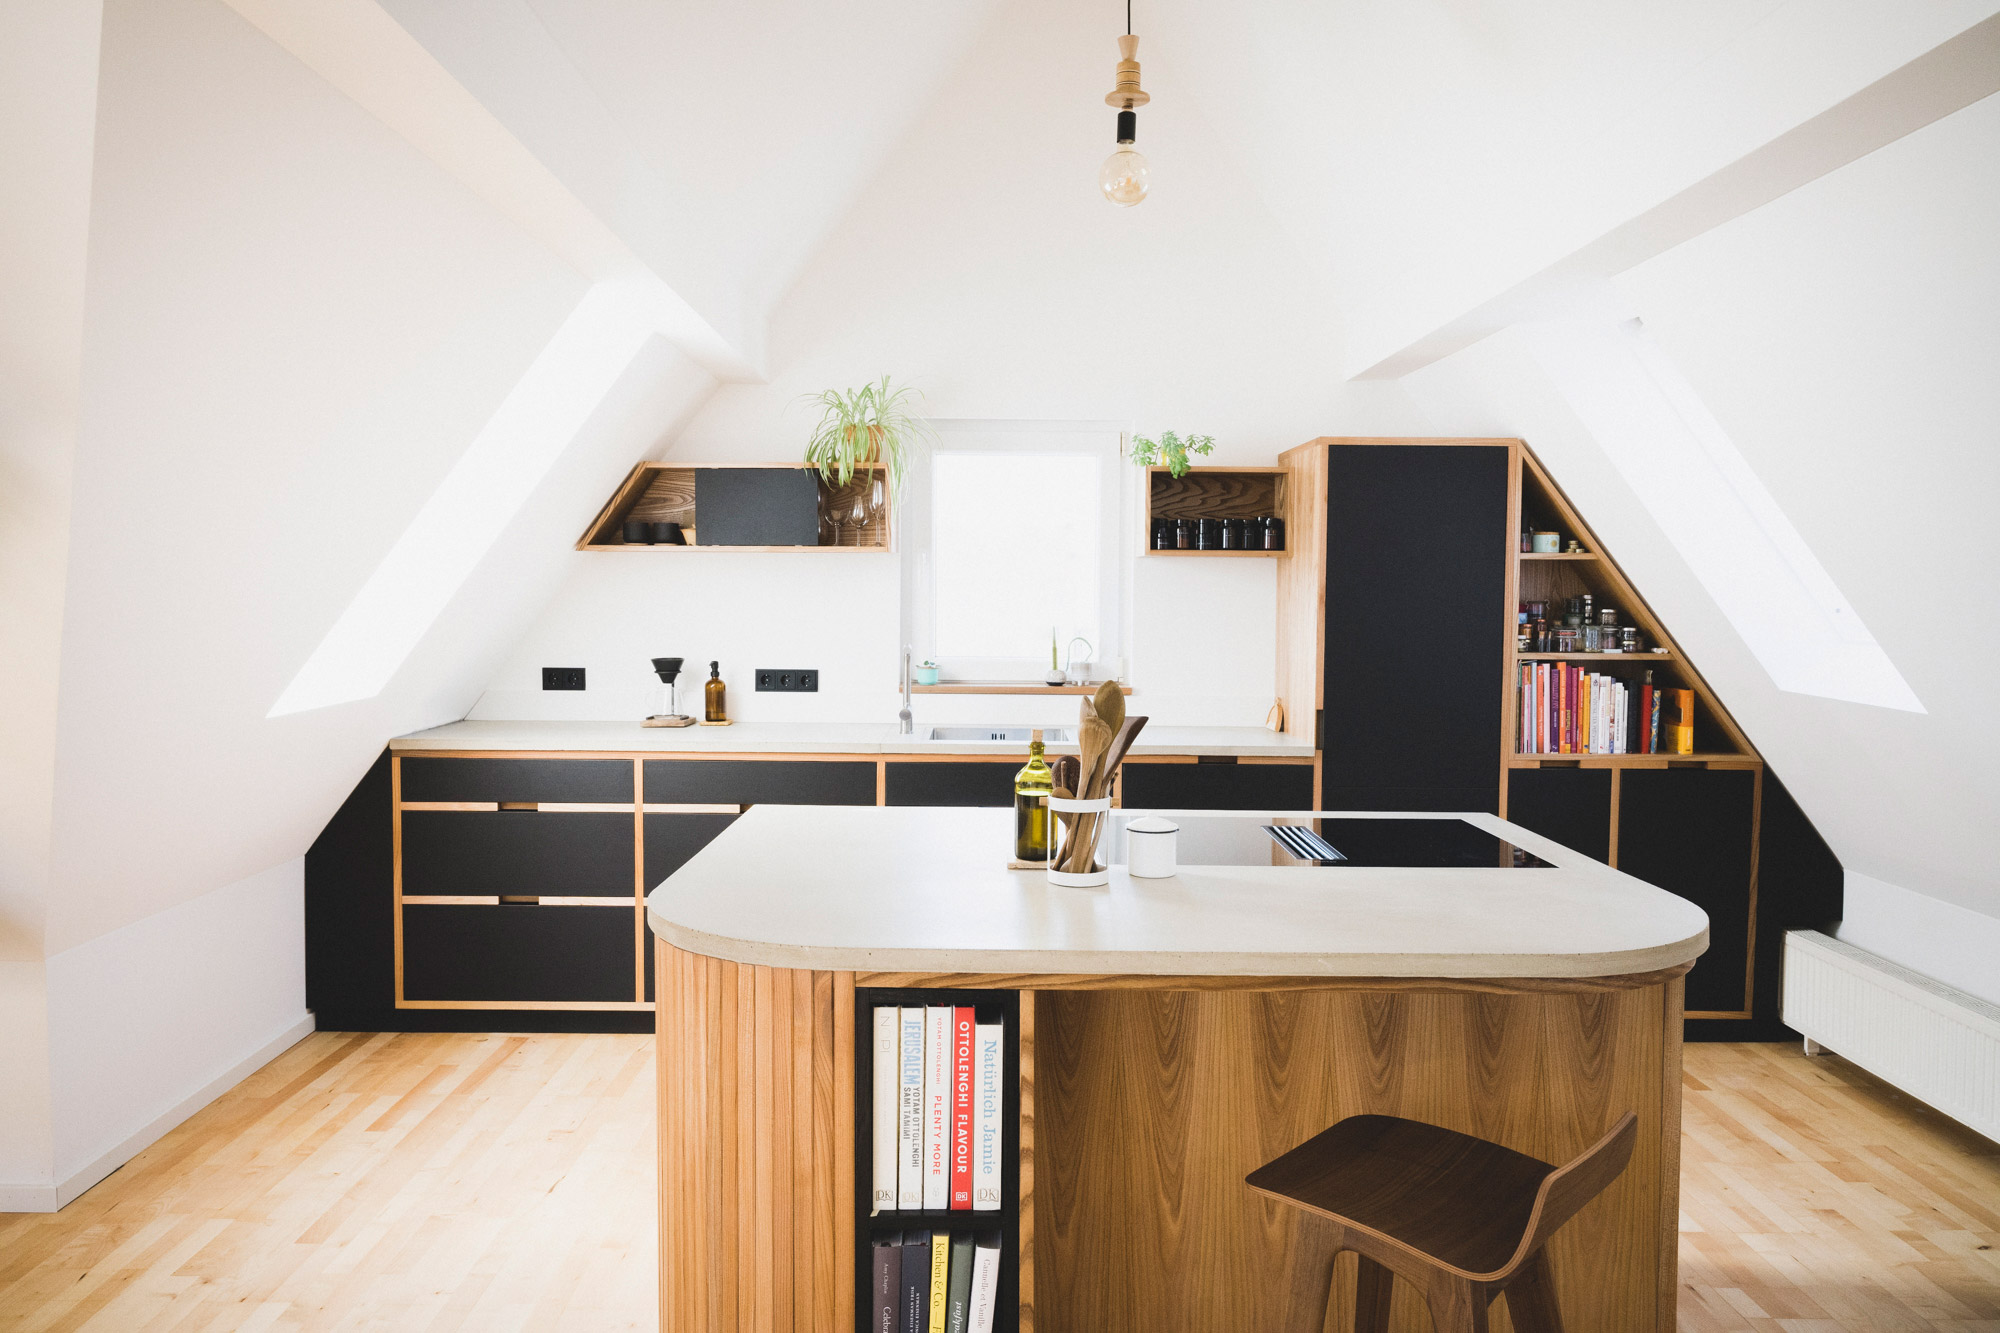 Maßgeschneiderte Küche aus Holz und Beton in einem renovierten Haus in Nürnberg auf einem Parkettboden. 